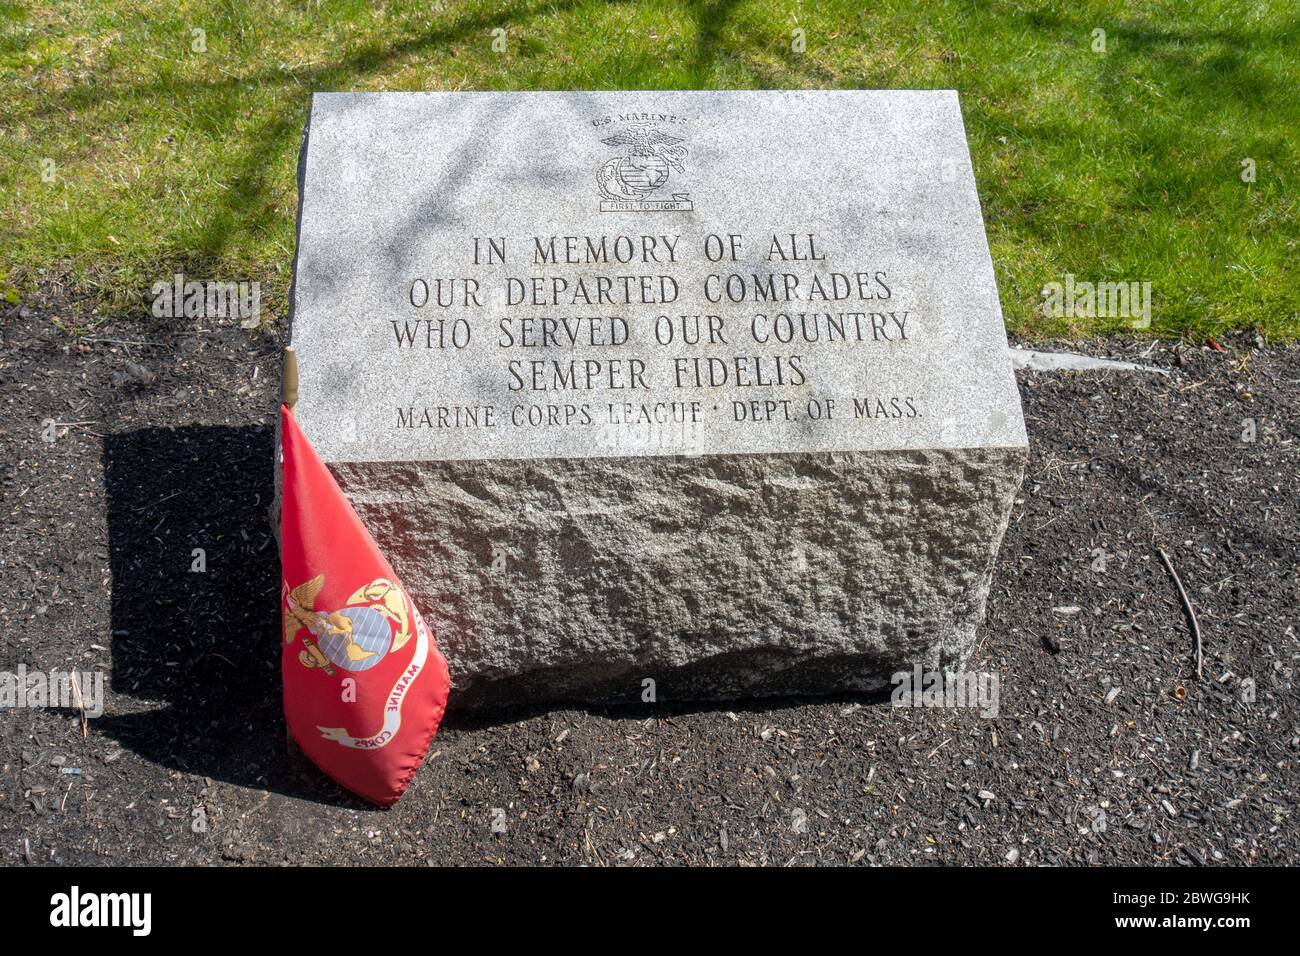 Monumento a Piedra grabada en honor a los Marines de los Estados Unidos, primero en luchar, en memoria de todos nuestros compañeros de partida que sirvieron a nuestro país Semper Fidelis Foto de stock